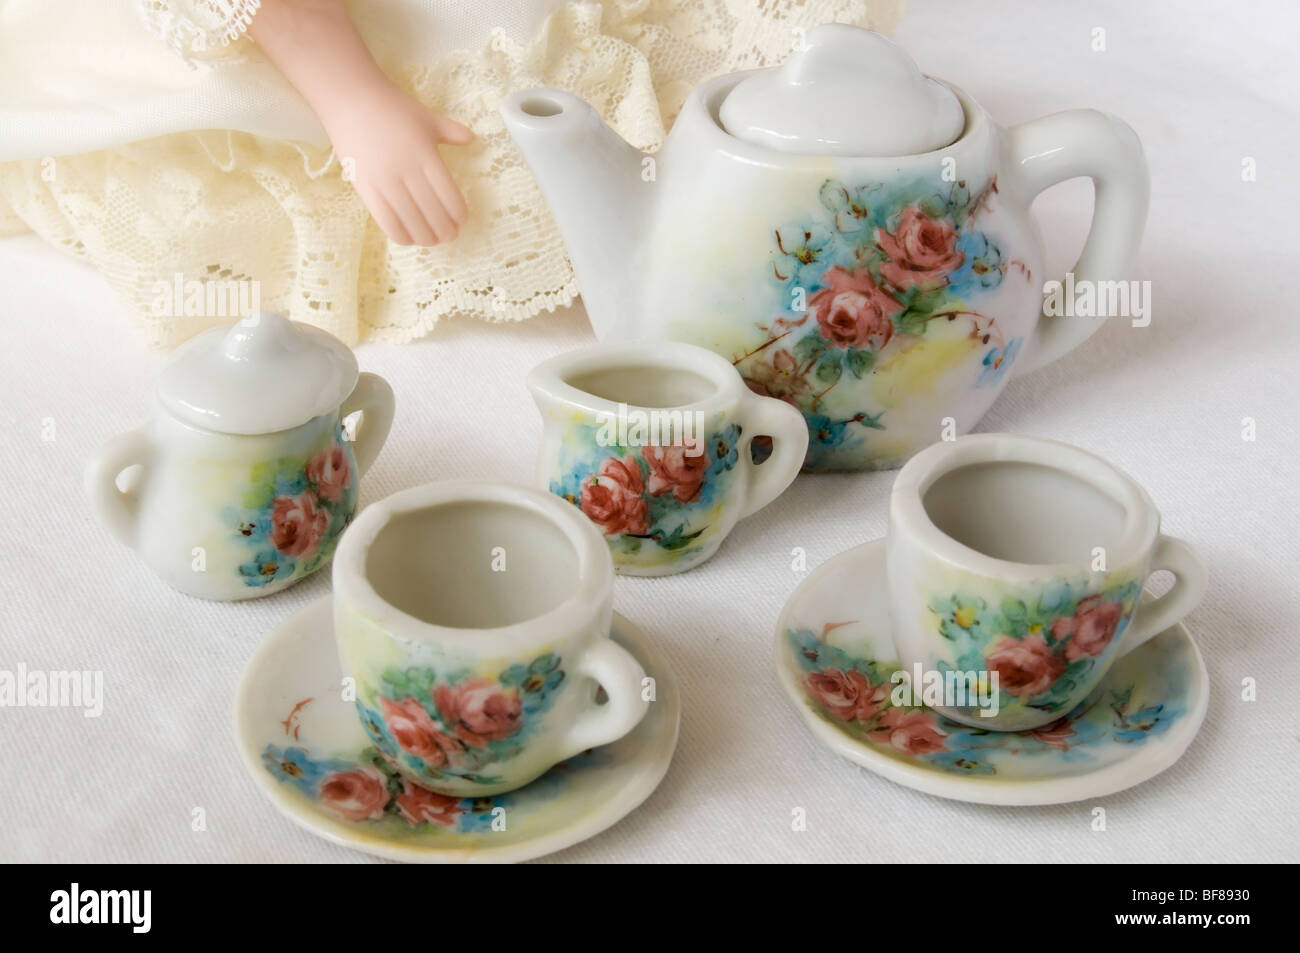 Gros plan du service à thé miniature peint avec un motif floral. Partie d'une poupée peut être vu en arrière-plan. Banque D'Images